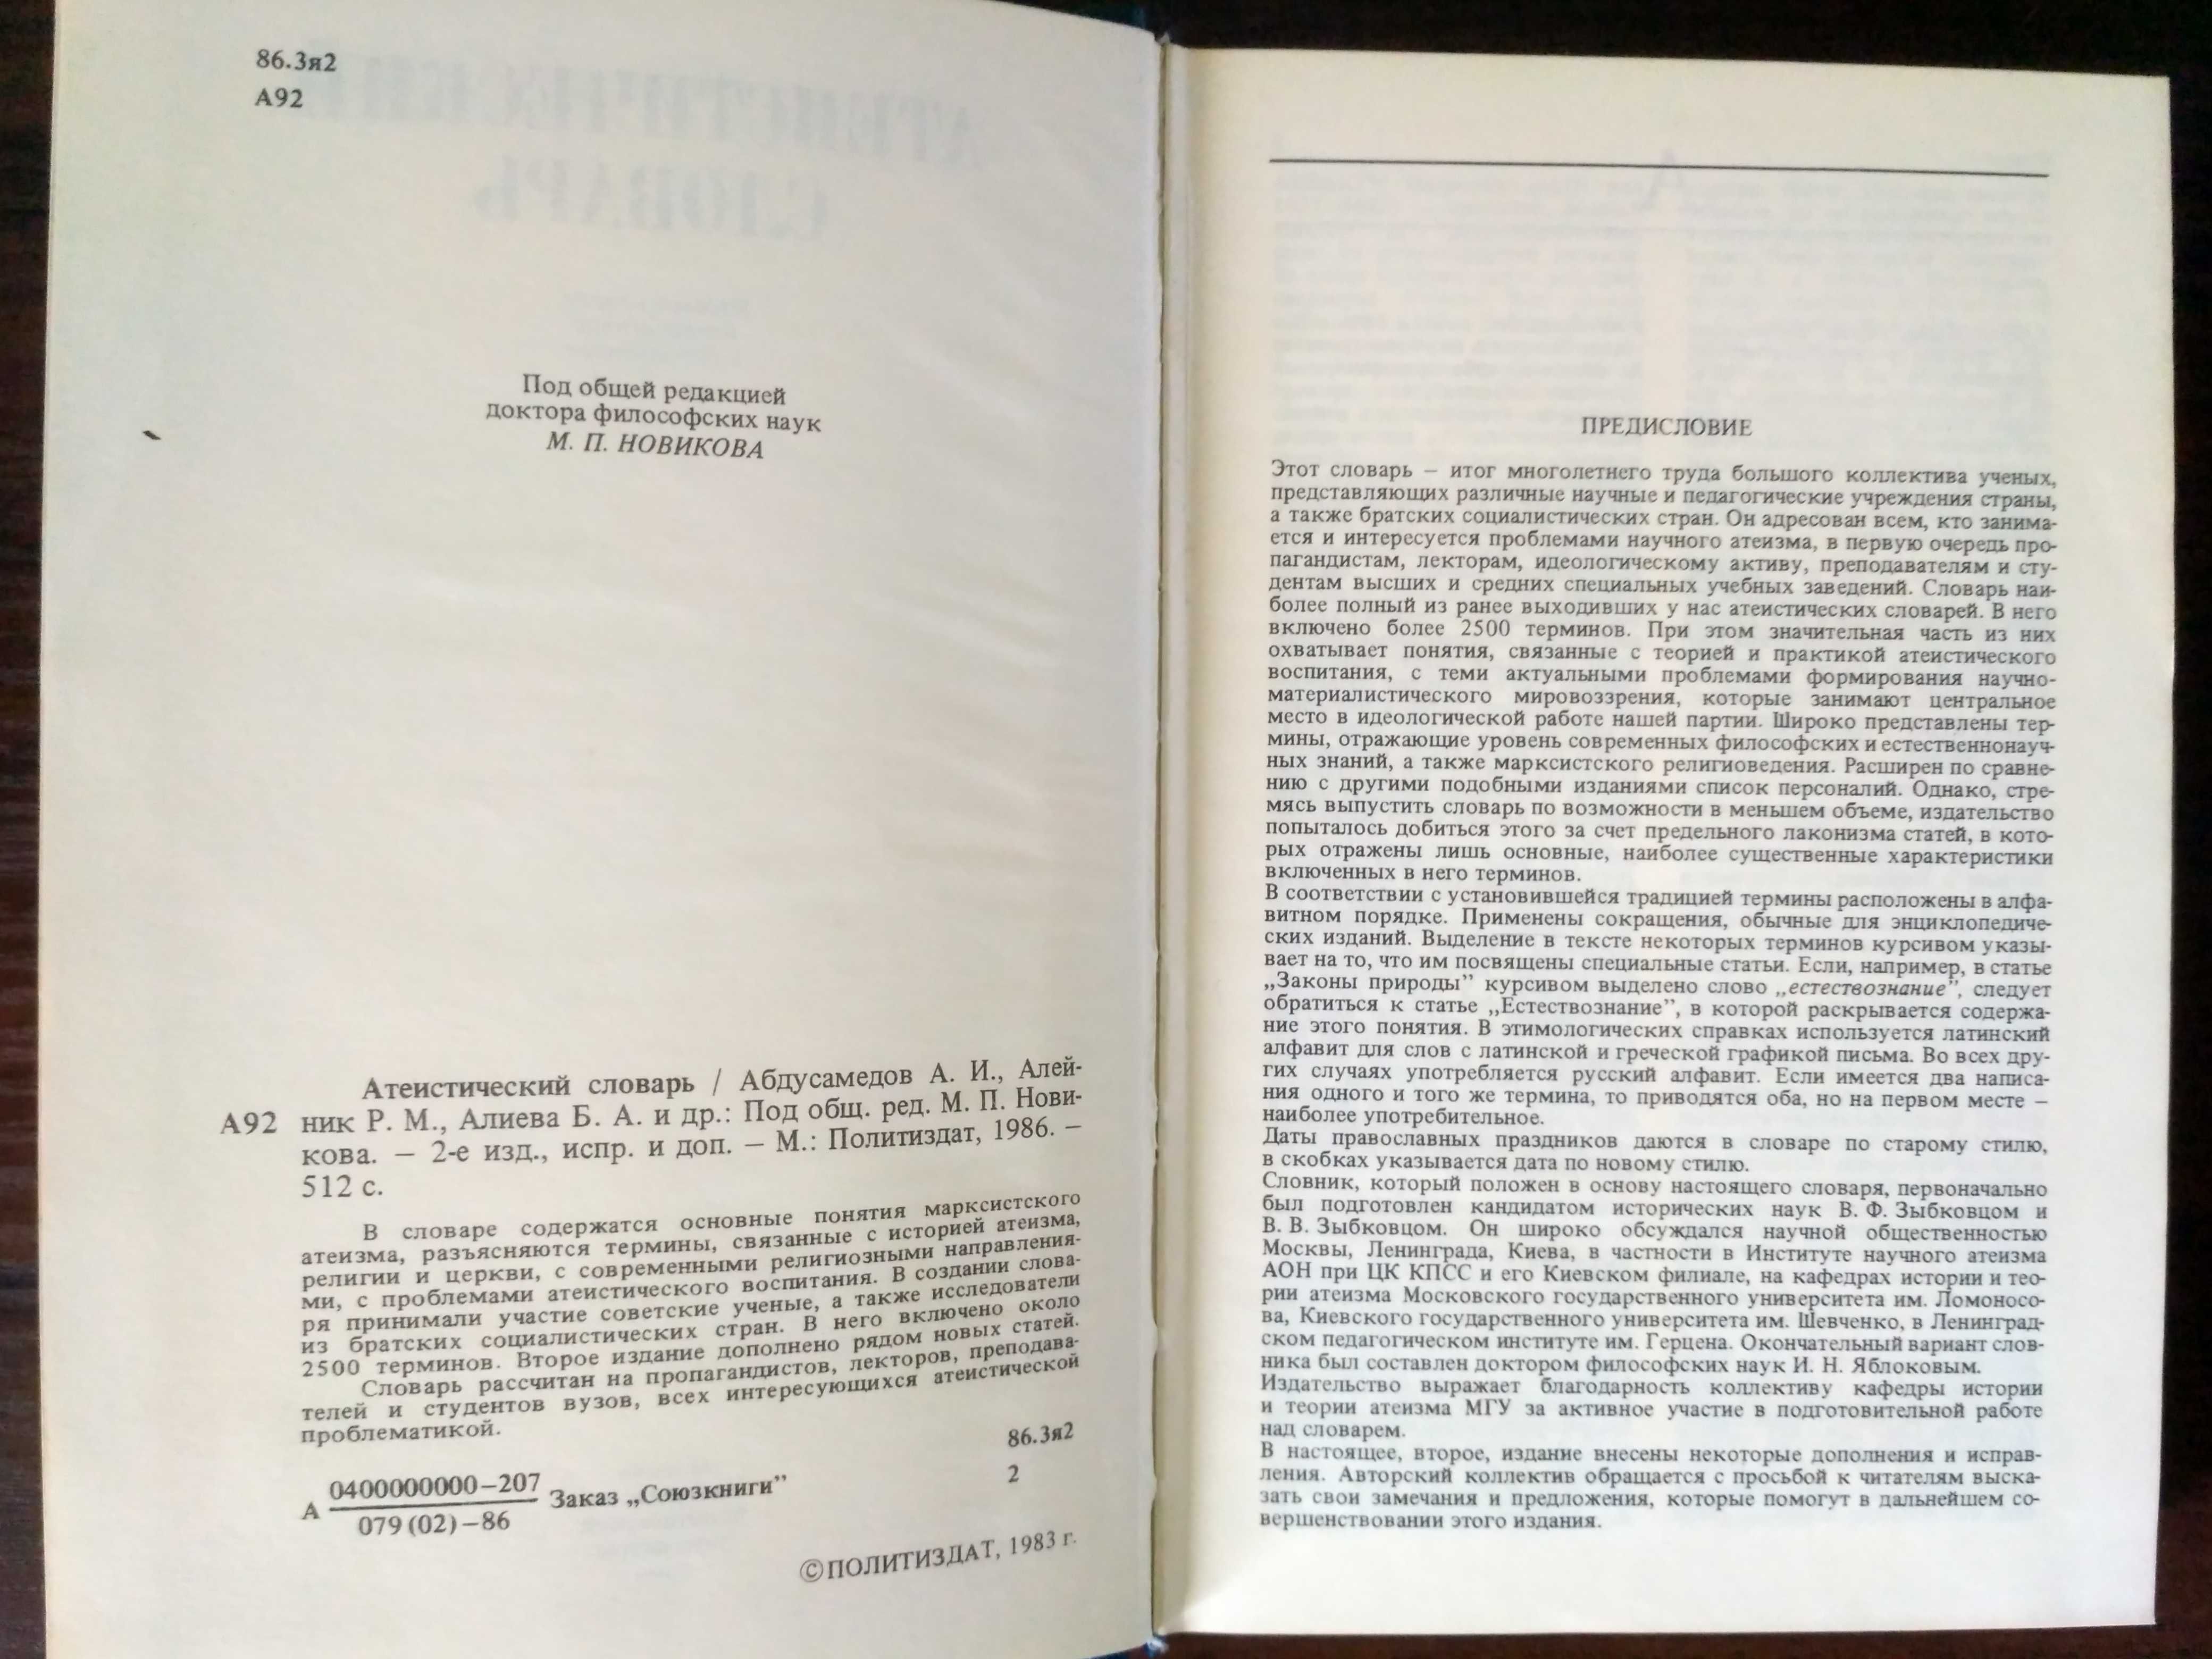 Атеистический словарь доктор фил.наук М.П.Новикова 1986